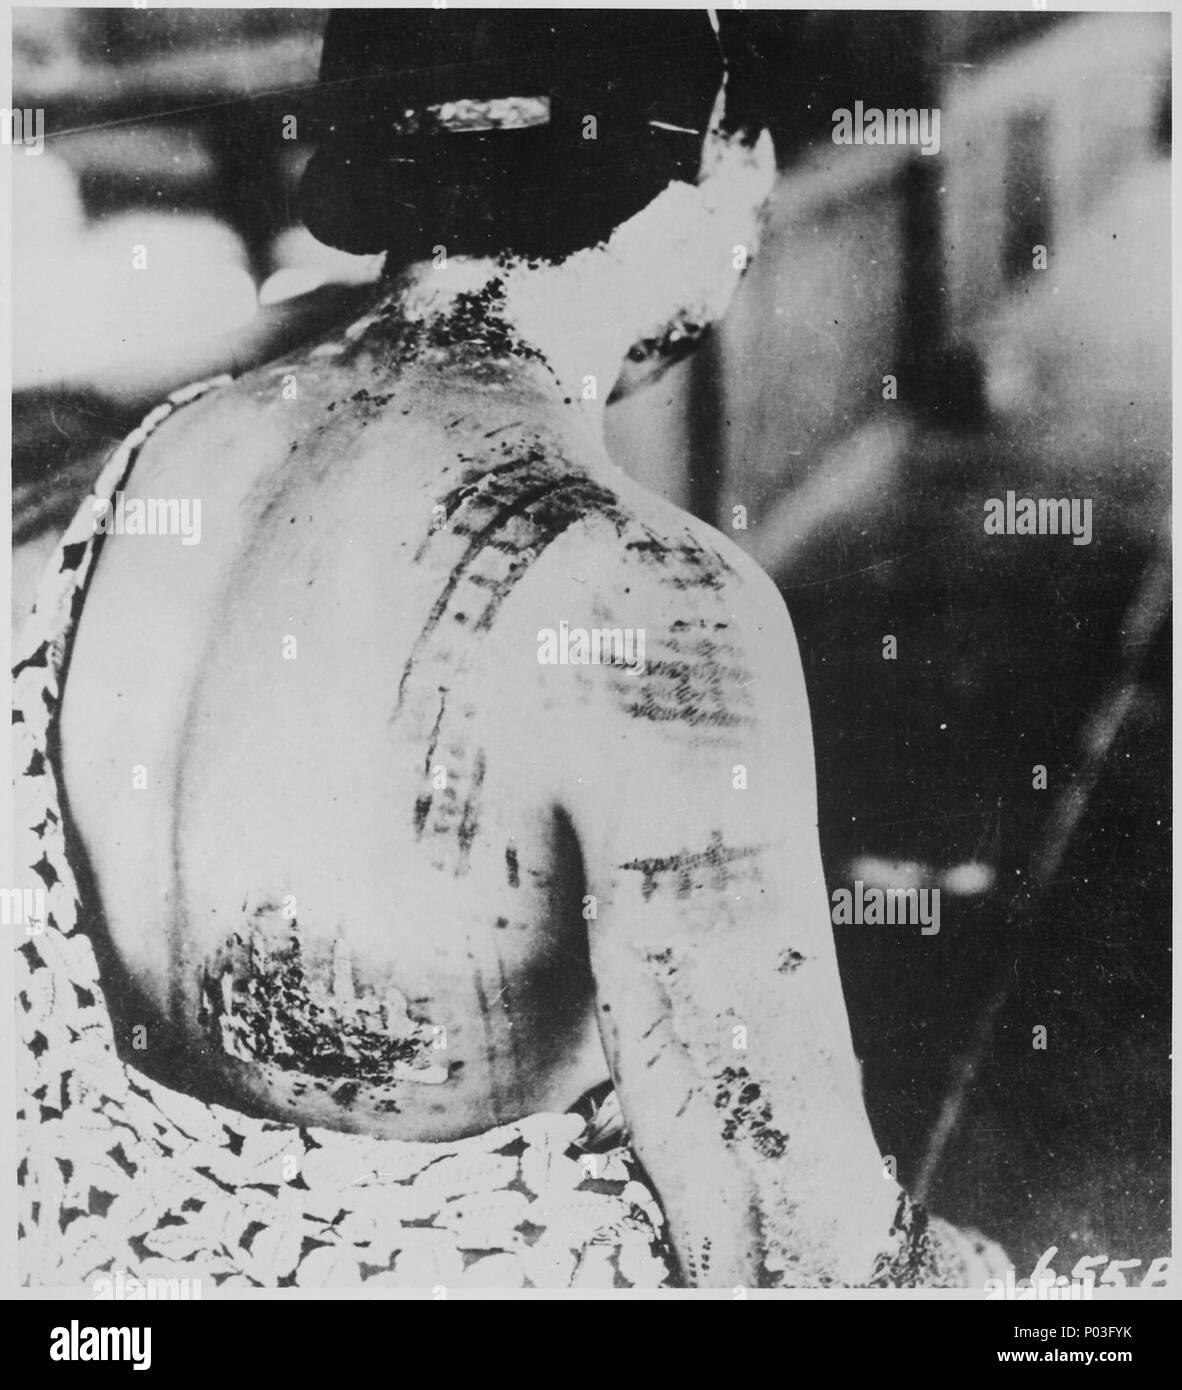 La peau du patient est brûlé dans un motif correspondant à la partie sombre d'un kimono portés au moment de l'explos - Banque D'Images